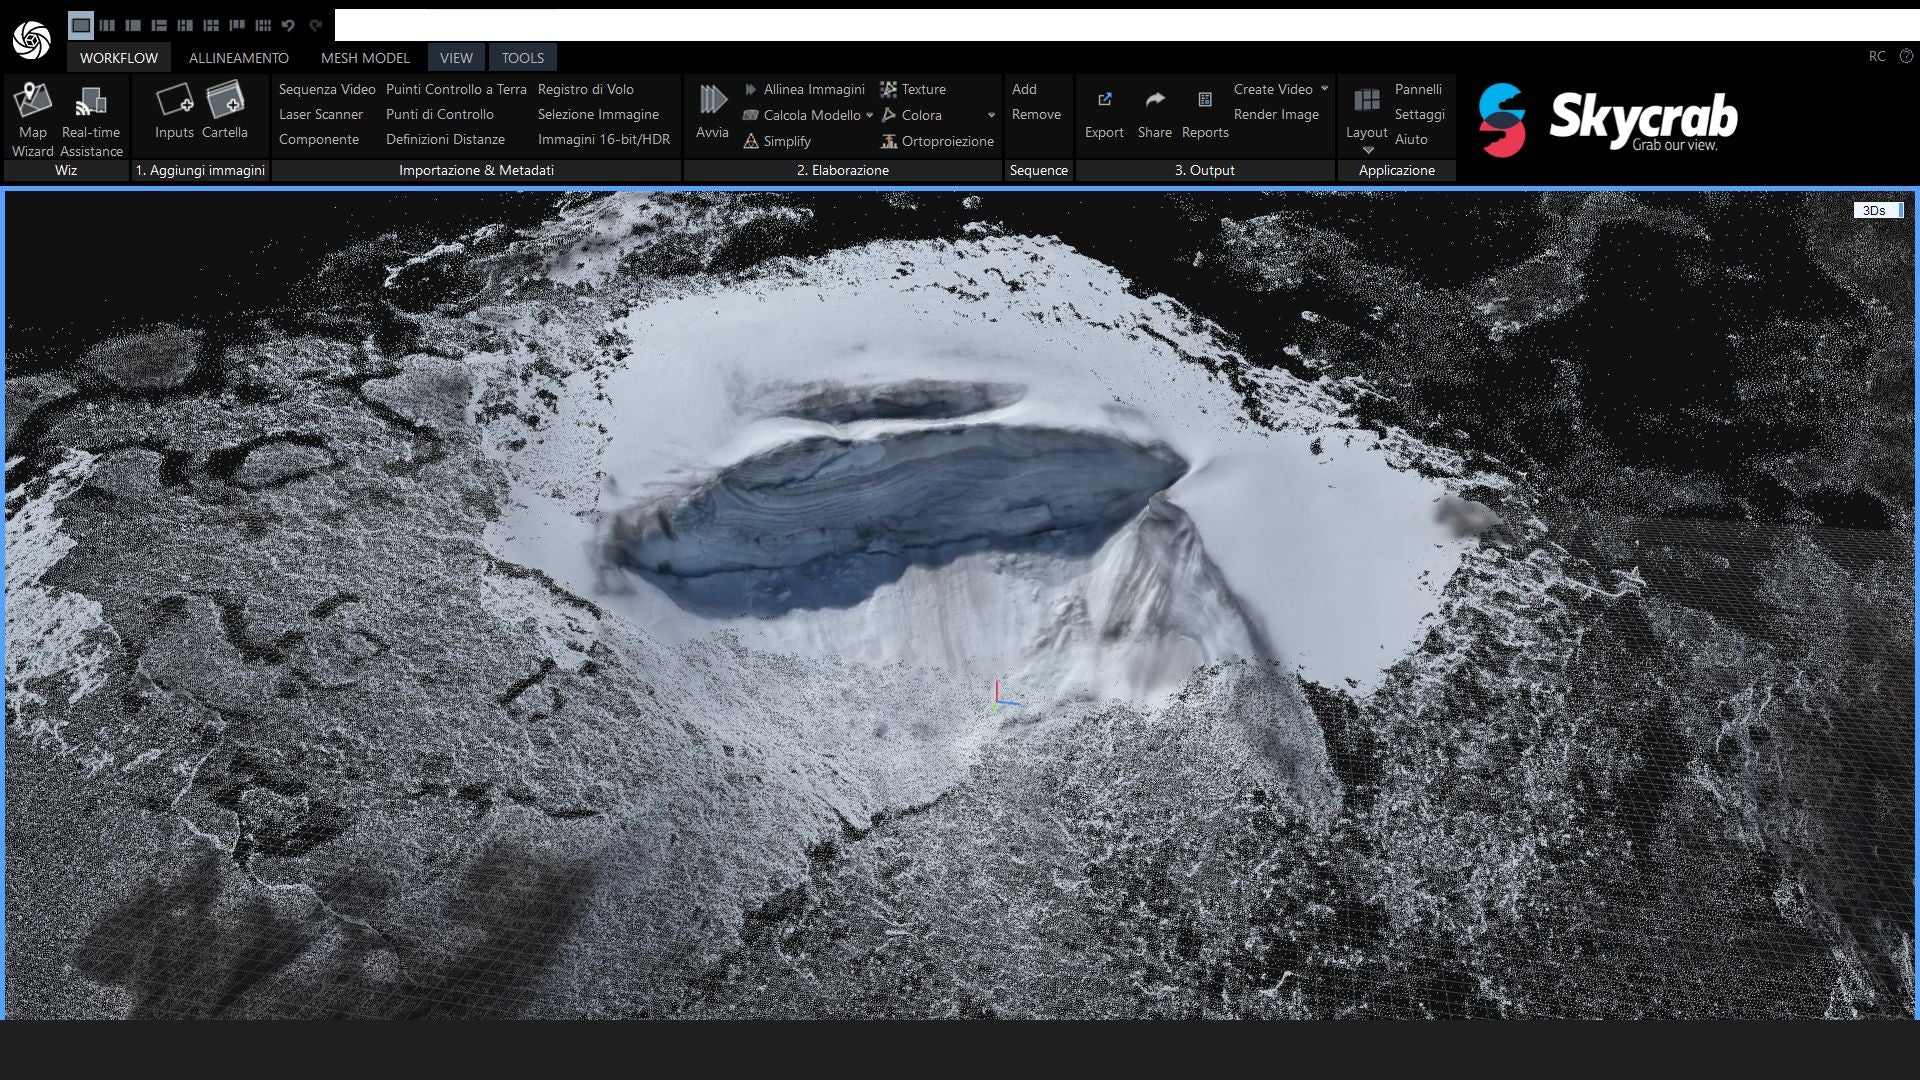 Sotto il ghiaccio: comprendere il crollo del Ghiacciaio Marmolada grazie ai droni e alle ricostruzioni 3D